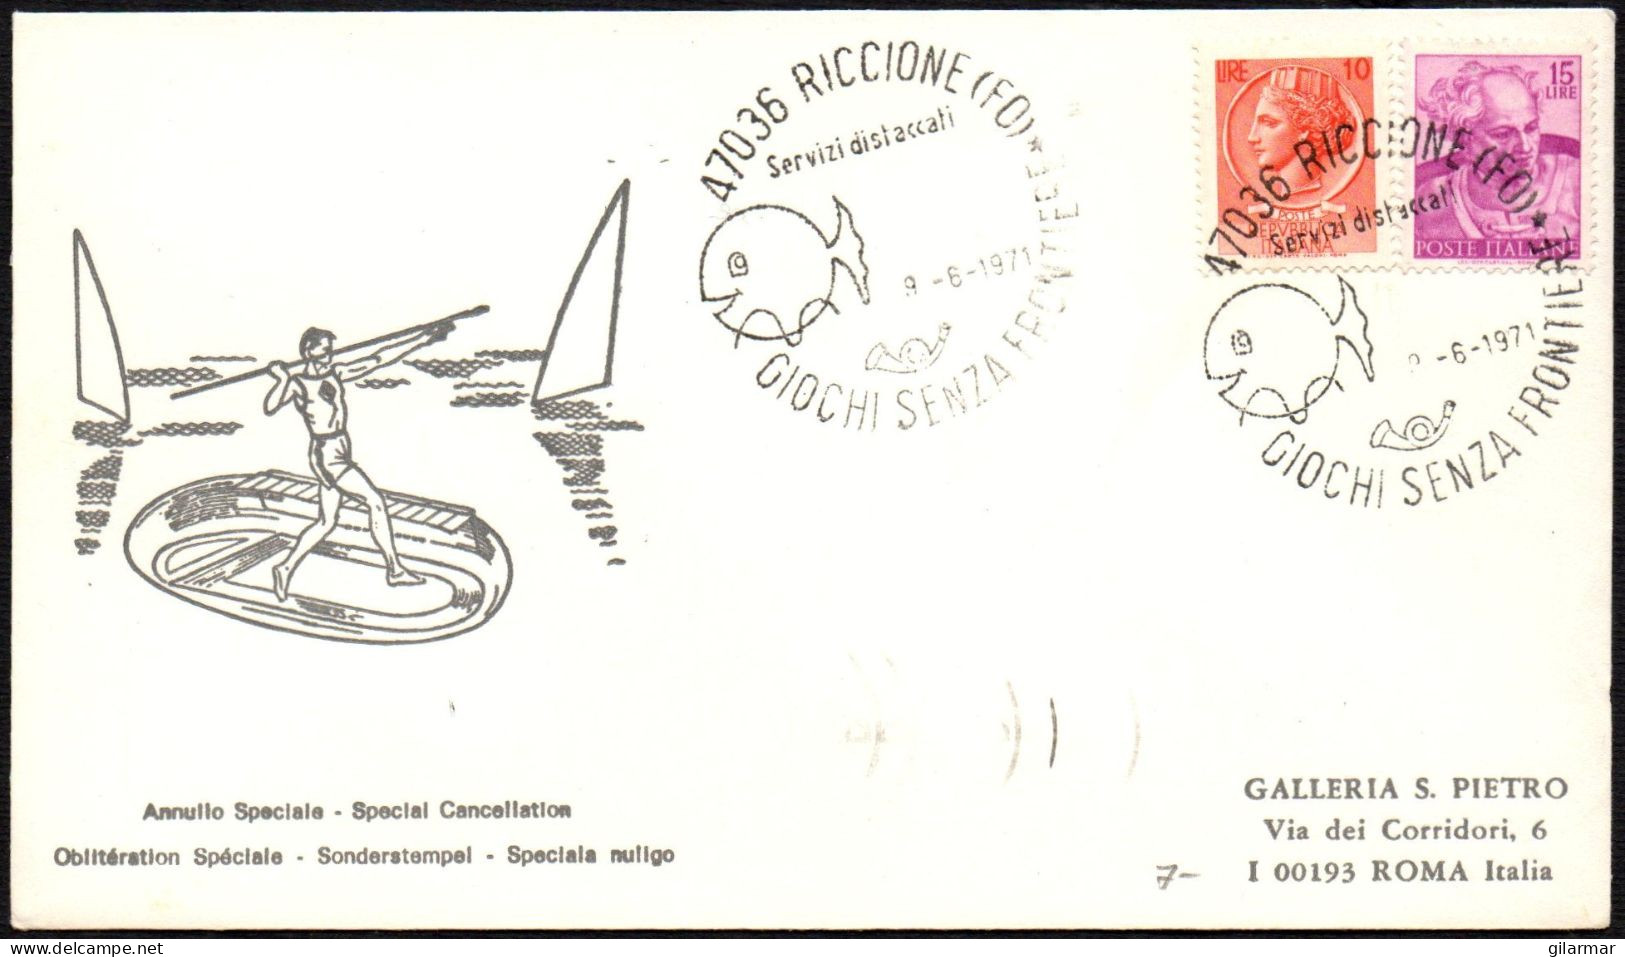 ITALIA RICCIONE (FO) 1971 - GIOCHI SENZA FRONTIERE - BUSTA VIAGGIATA - BOLLO ARRIVO ROMA RISPARMIO POSTALE - M - Sin Clasificación